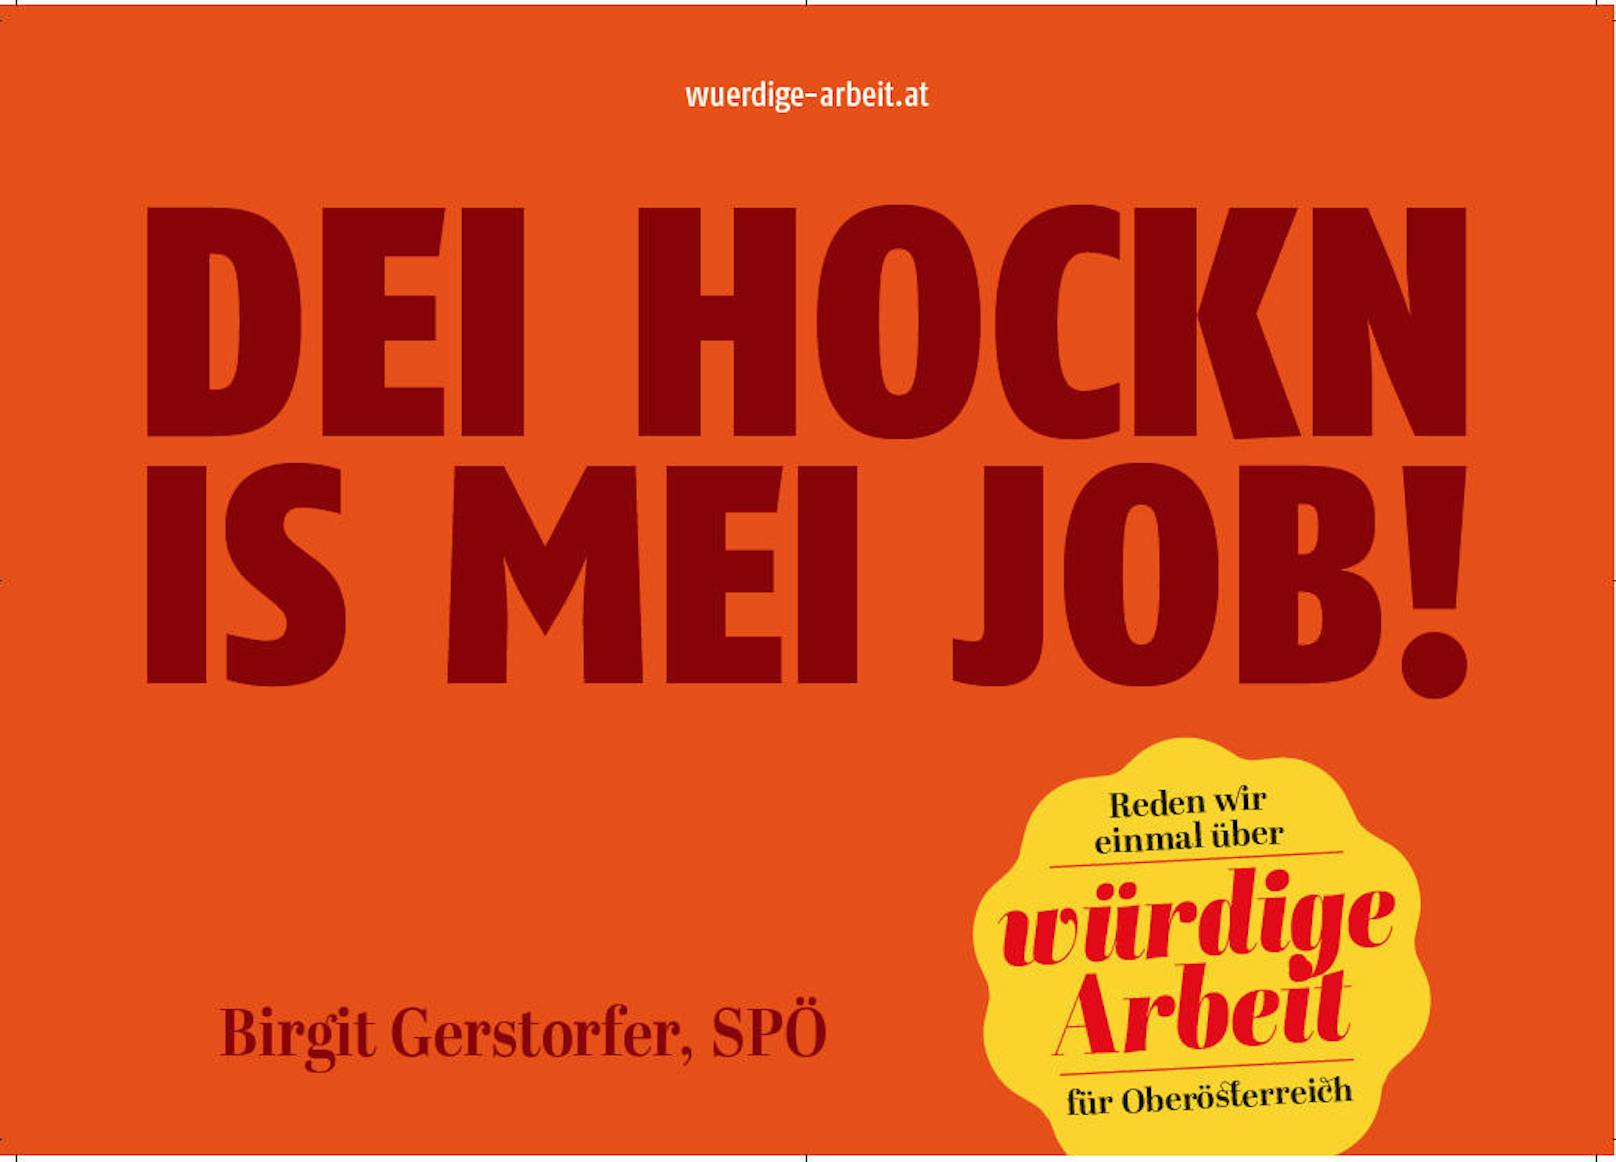 Mit ihrer neuen Plakatserie "würdige Arbeit" will die SPOÖ auf Missstände in der Arbeitswelt aufmerksam machen.